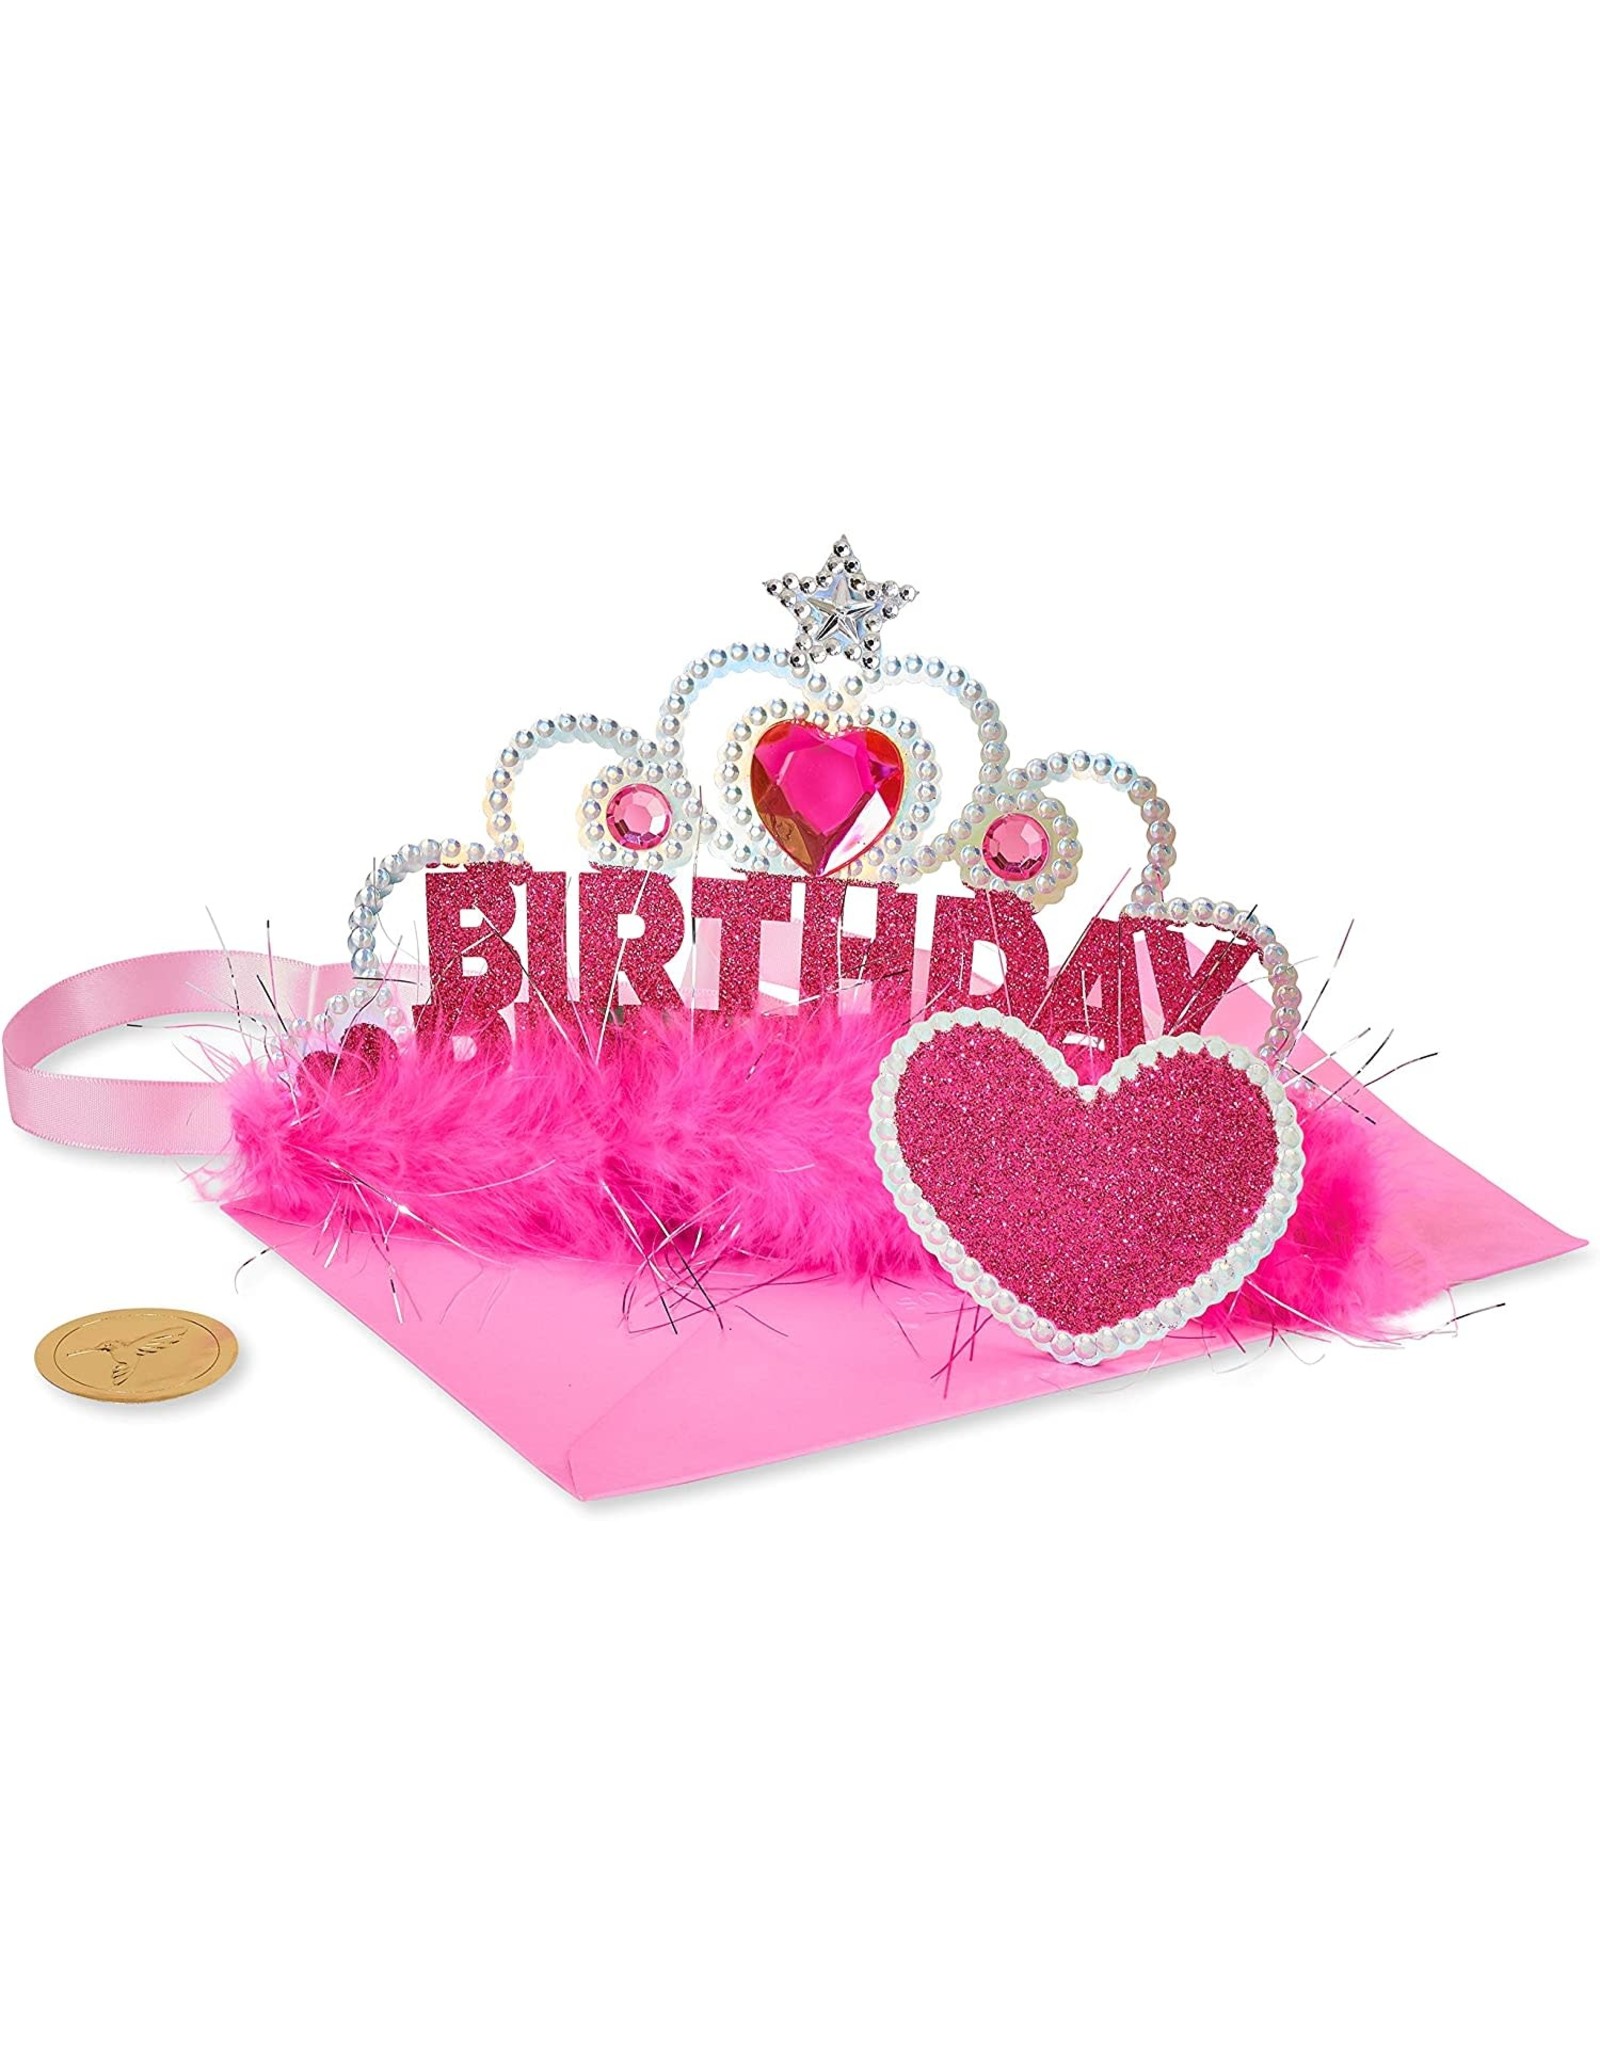 PAPYRUS® Birthday Card Birthday Princess Wearable Tiara Card